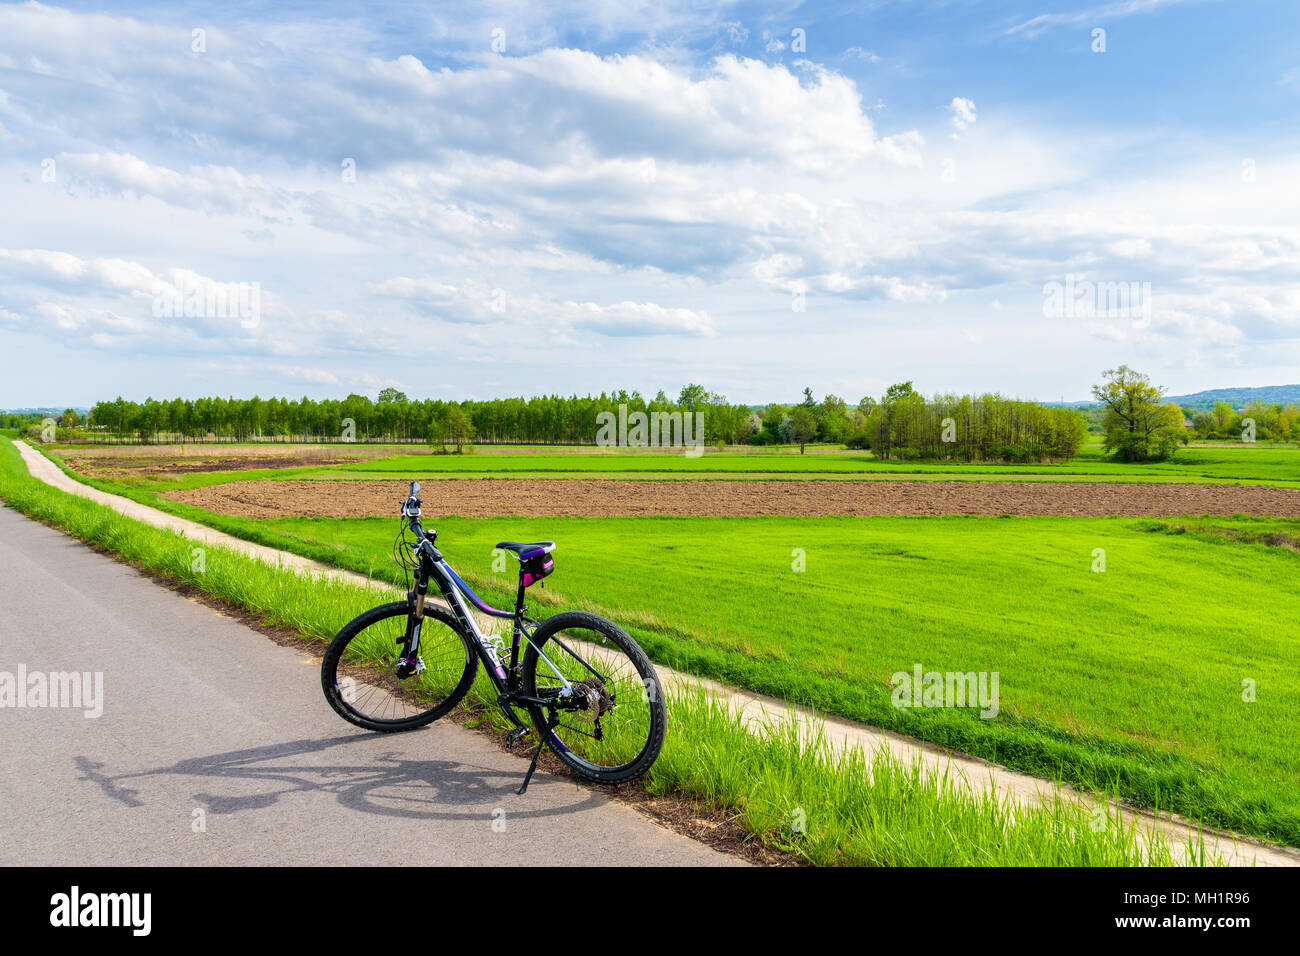 Piste cyclable de la rivière Vistule, Pologne - Apr 28, 2018 : vtt gratuit sur piste cyclable à proximité de la rivière Vistule au printemps journée ensoleillée. Le vélo est très Banque D'Images